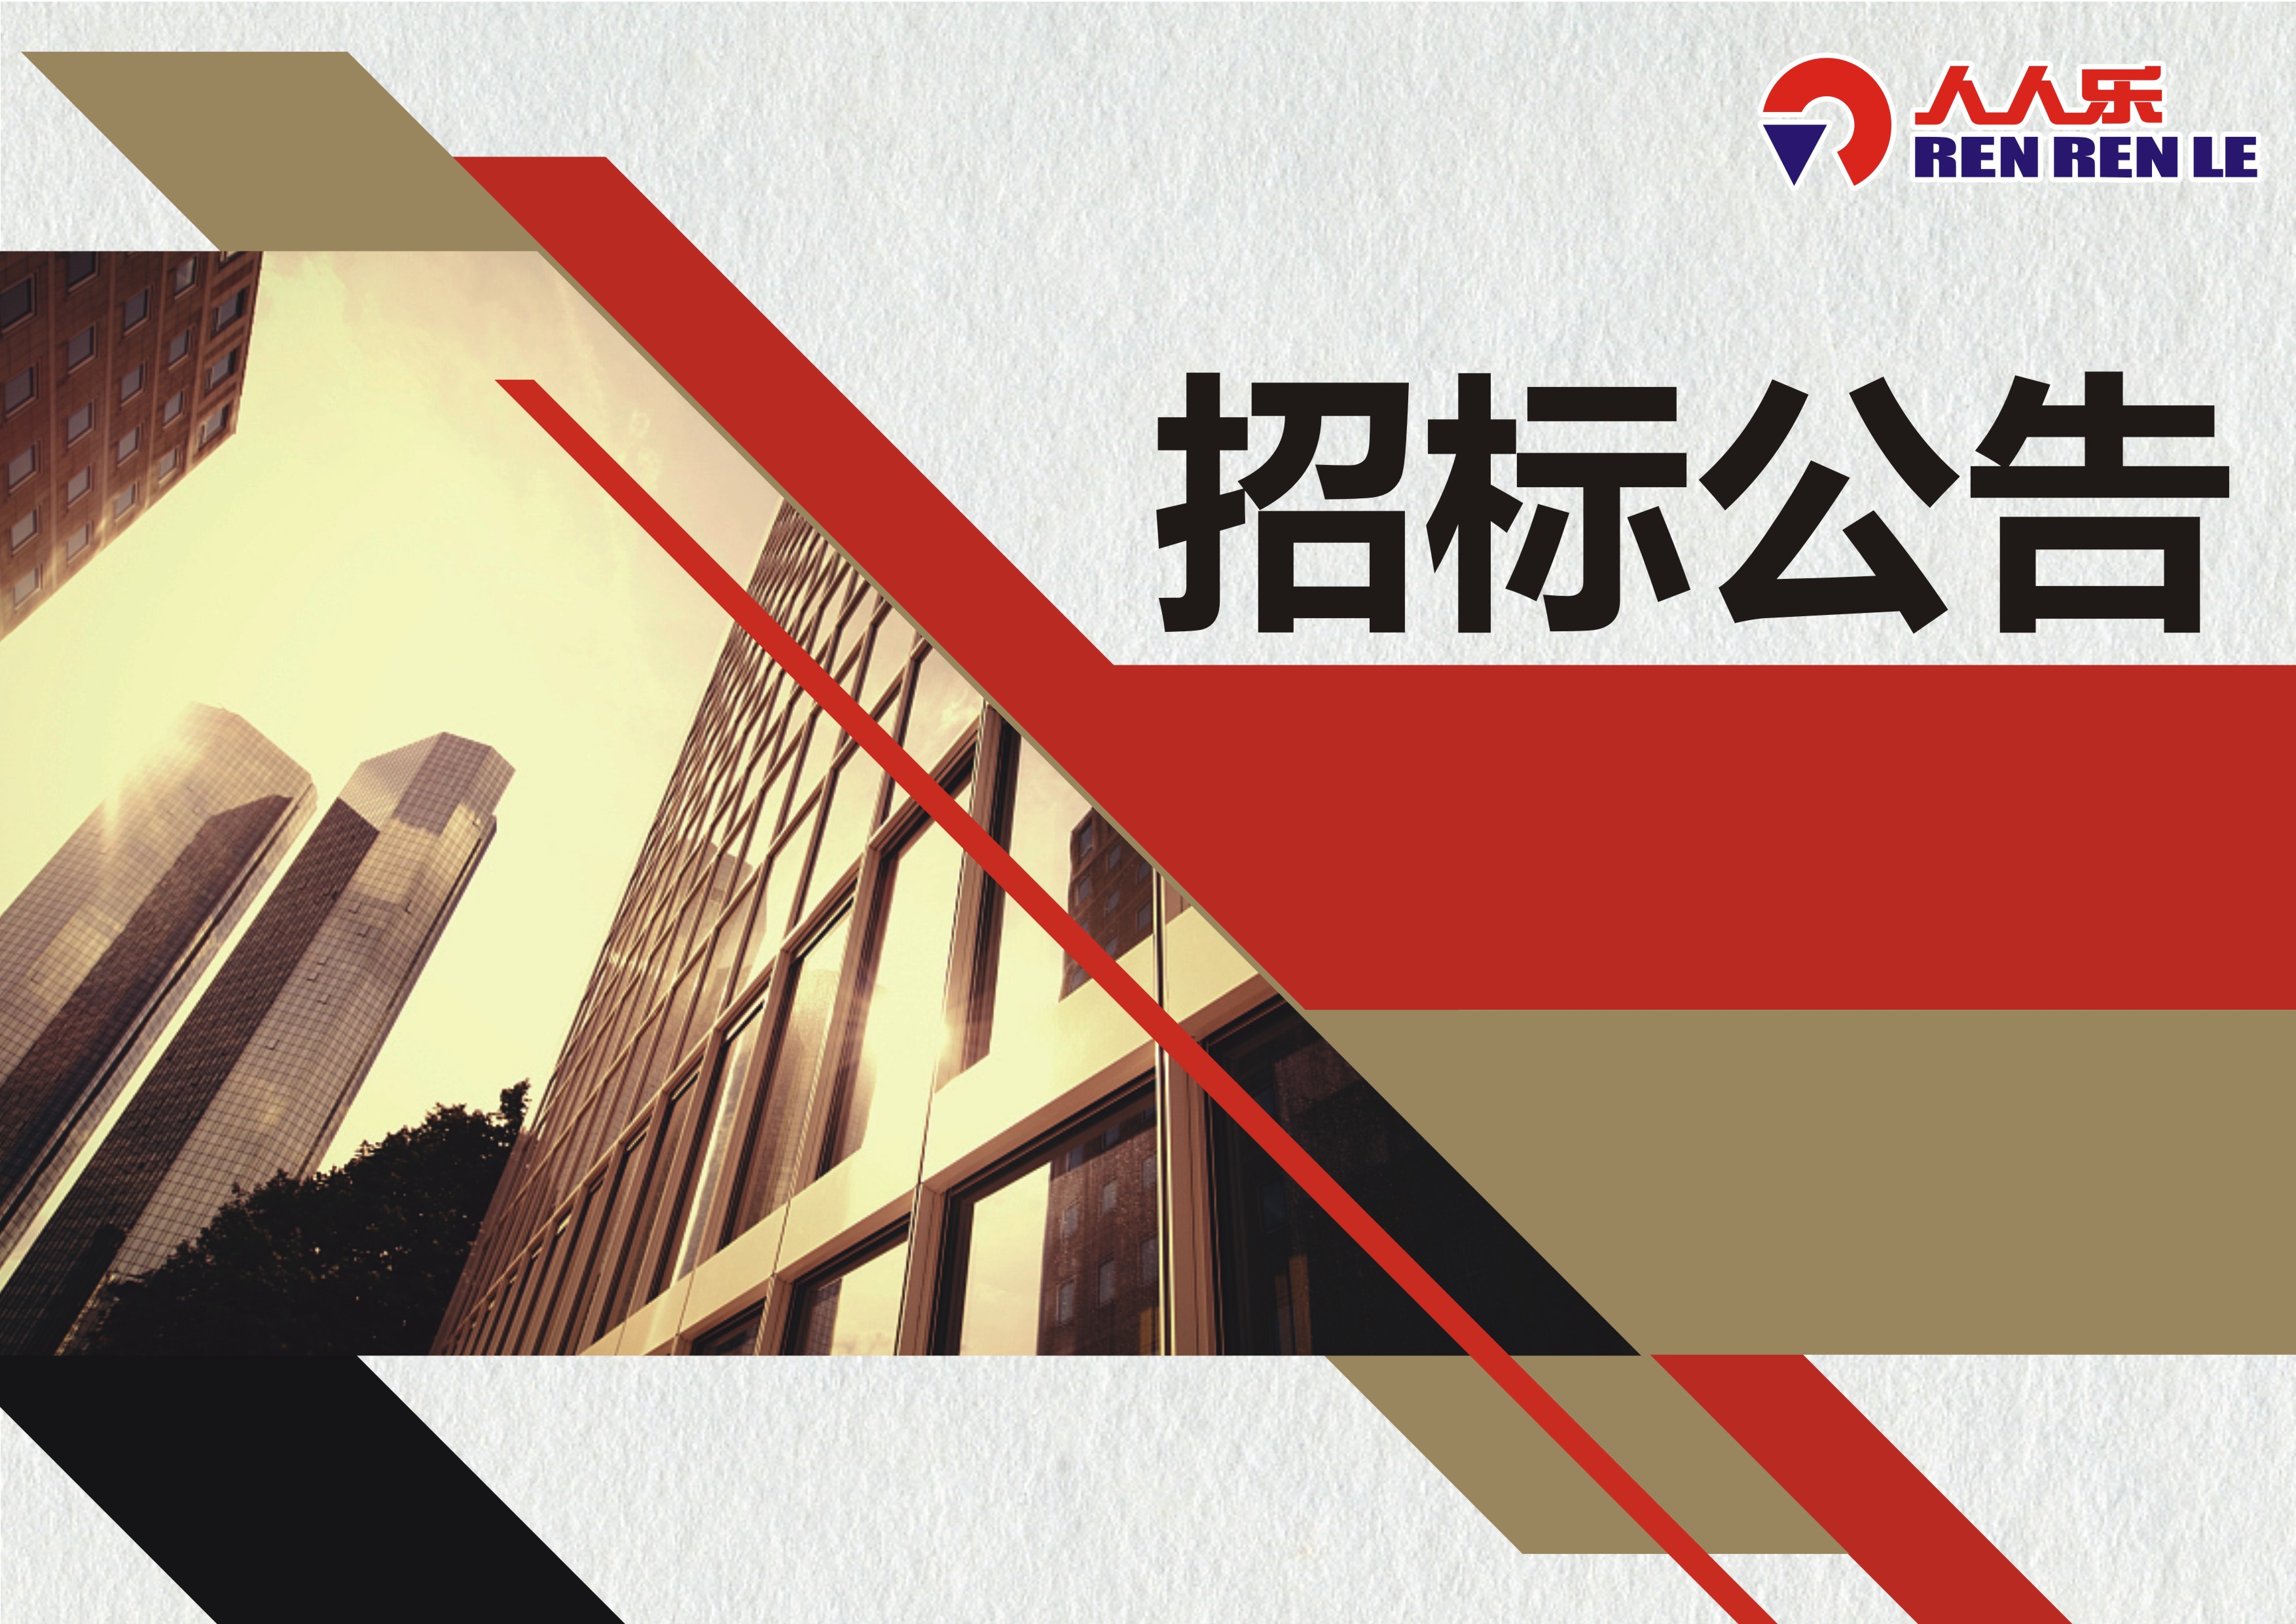 人人乐连锁商业集团股份有限公司天津区电梯设备年度维护保养招标书